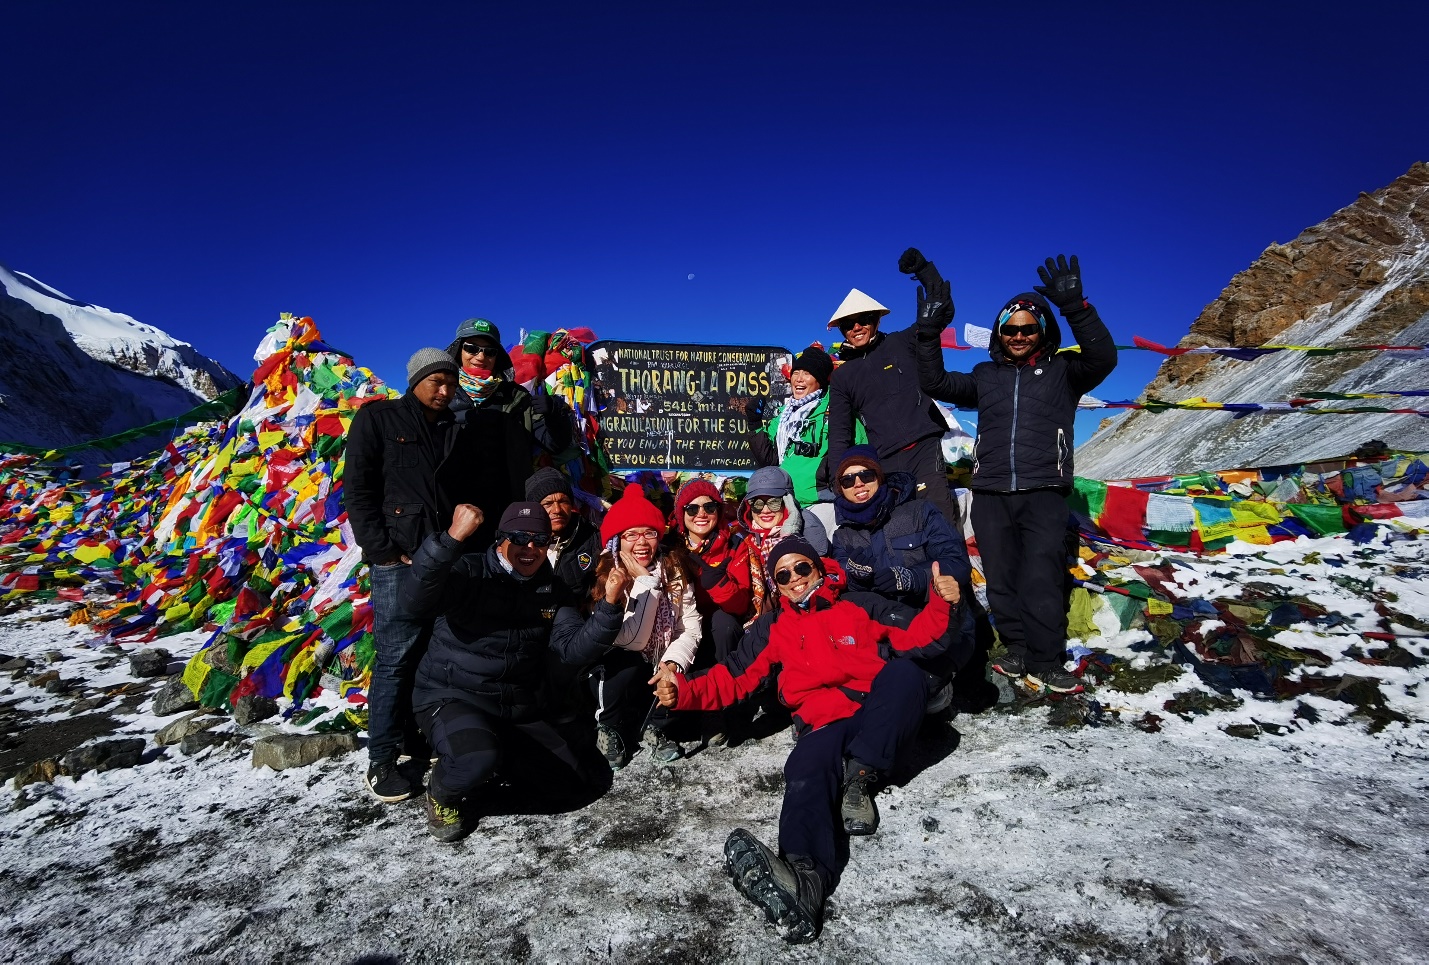 14 ngày trekking lên đỉnh Thorong La tuyết trắng: 5.416m, chúng tôi đến rồi đây! - 18